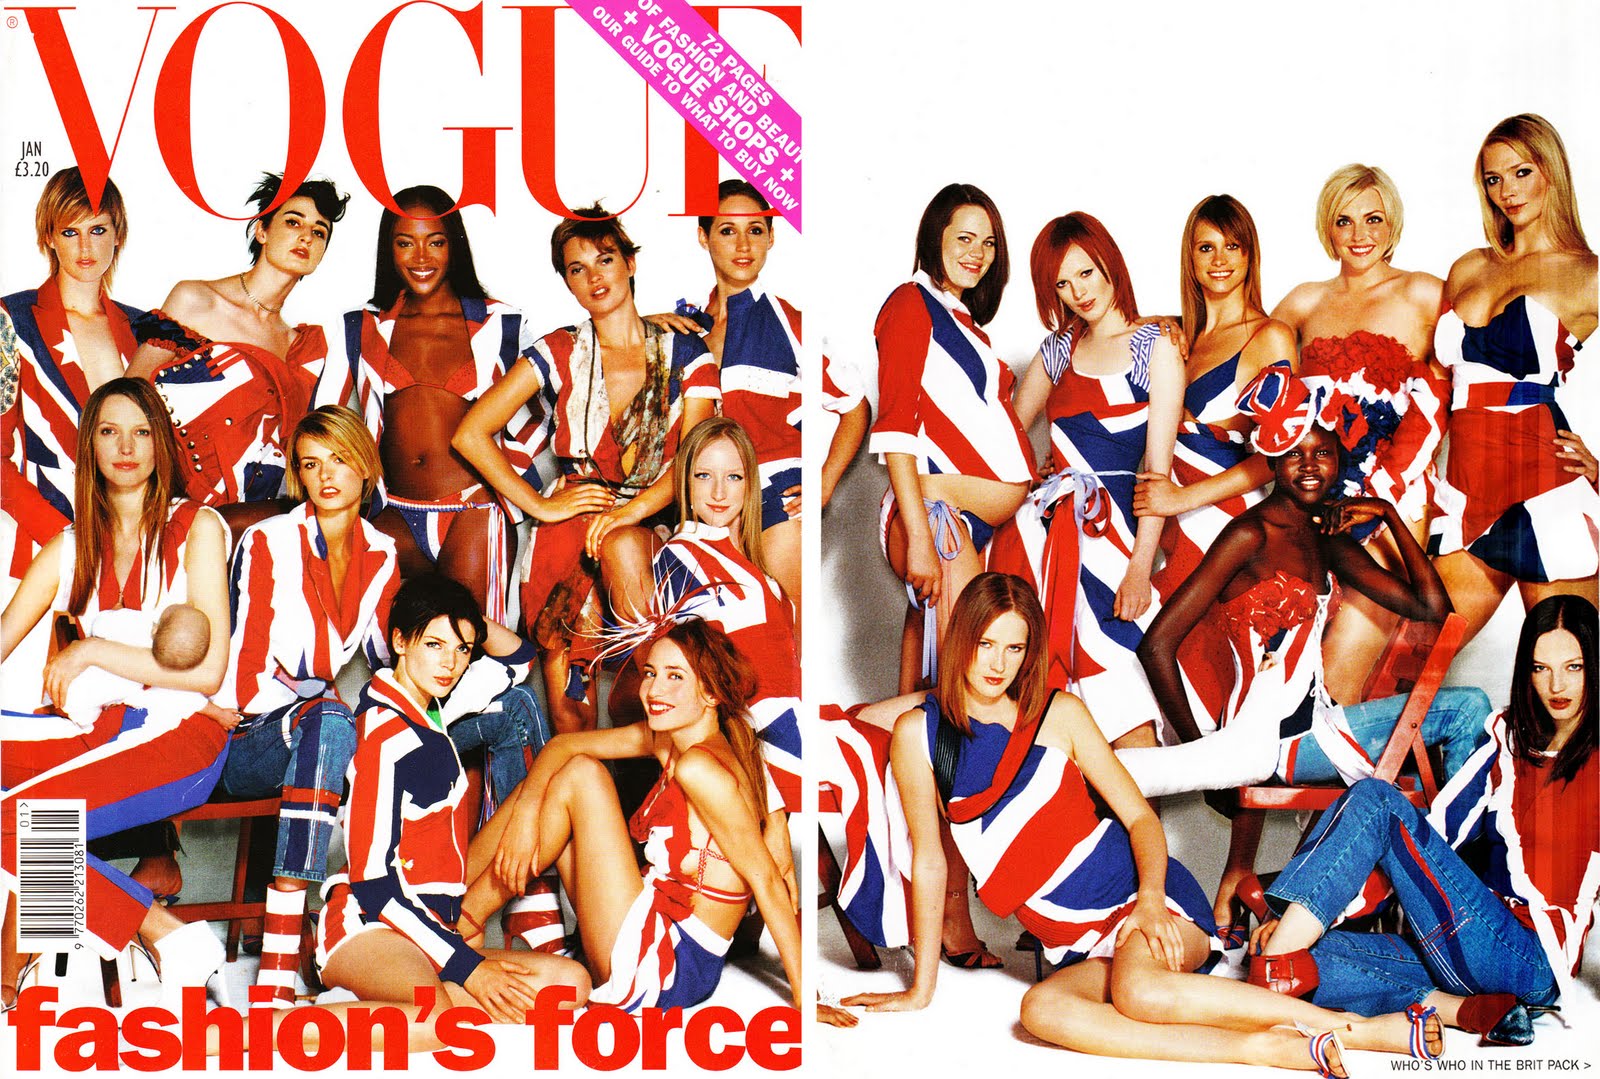 Las portadas grupales de Vogue